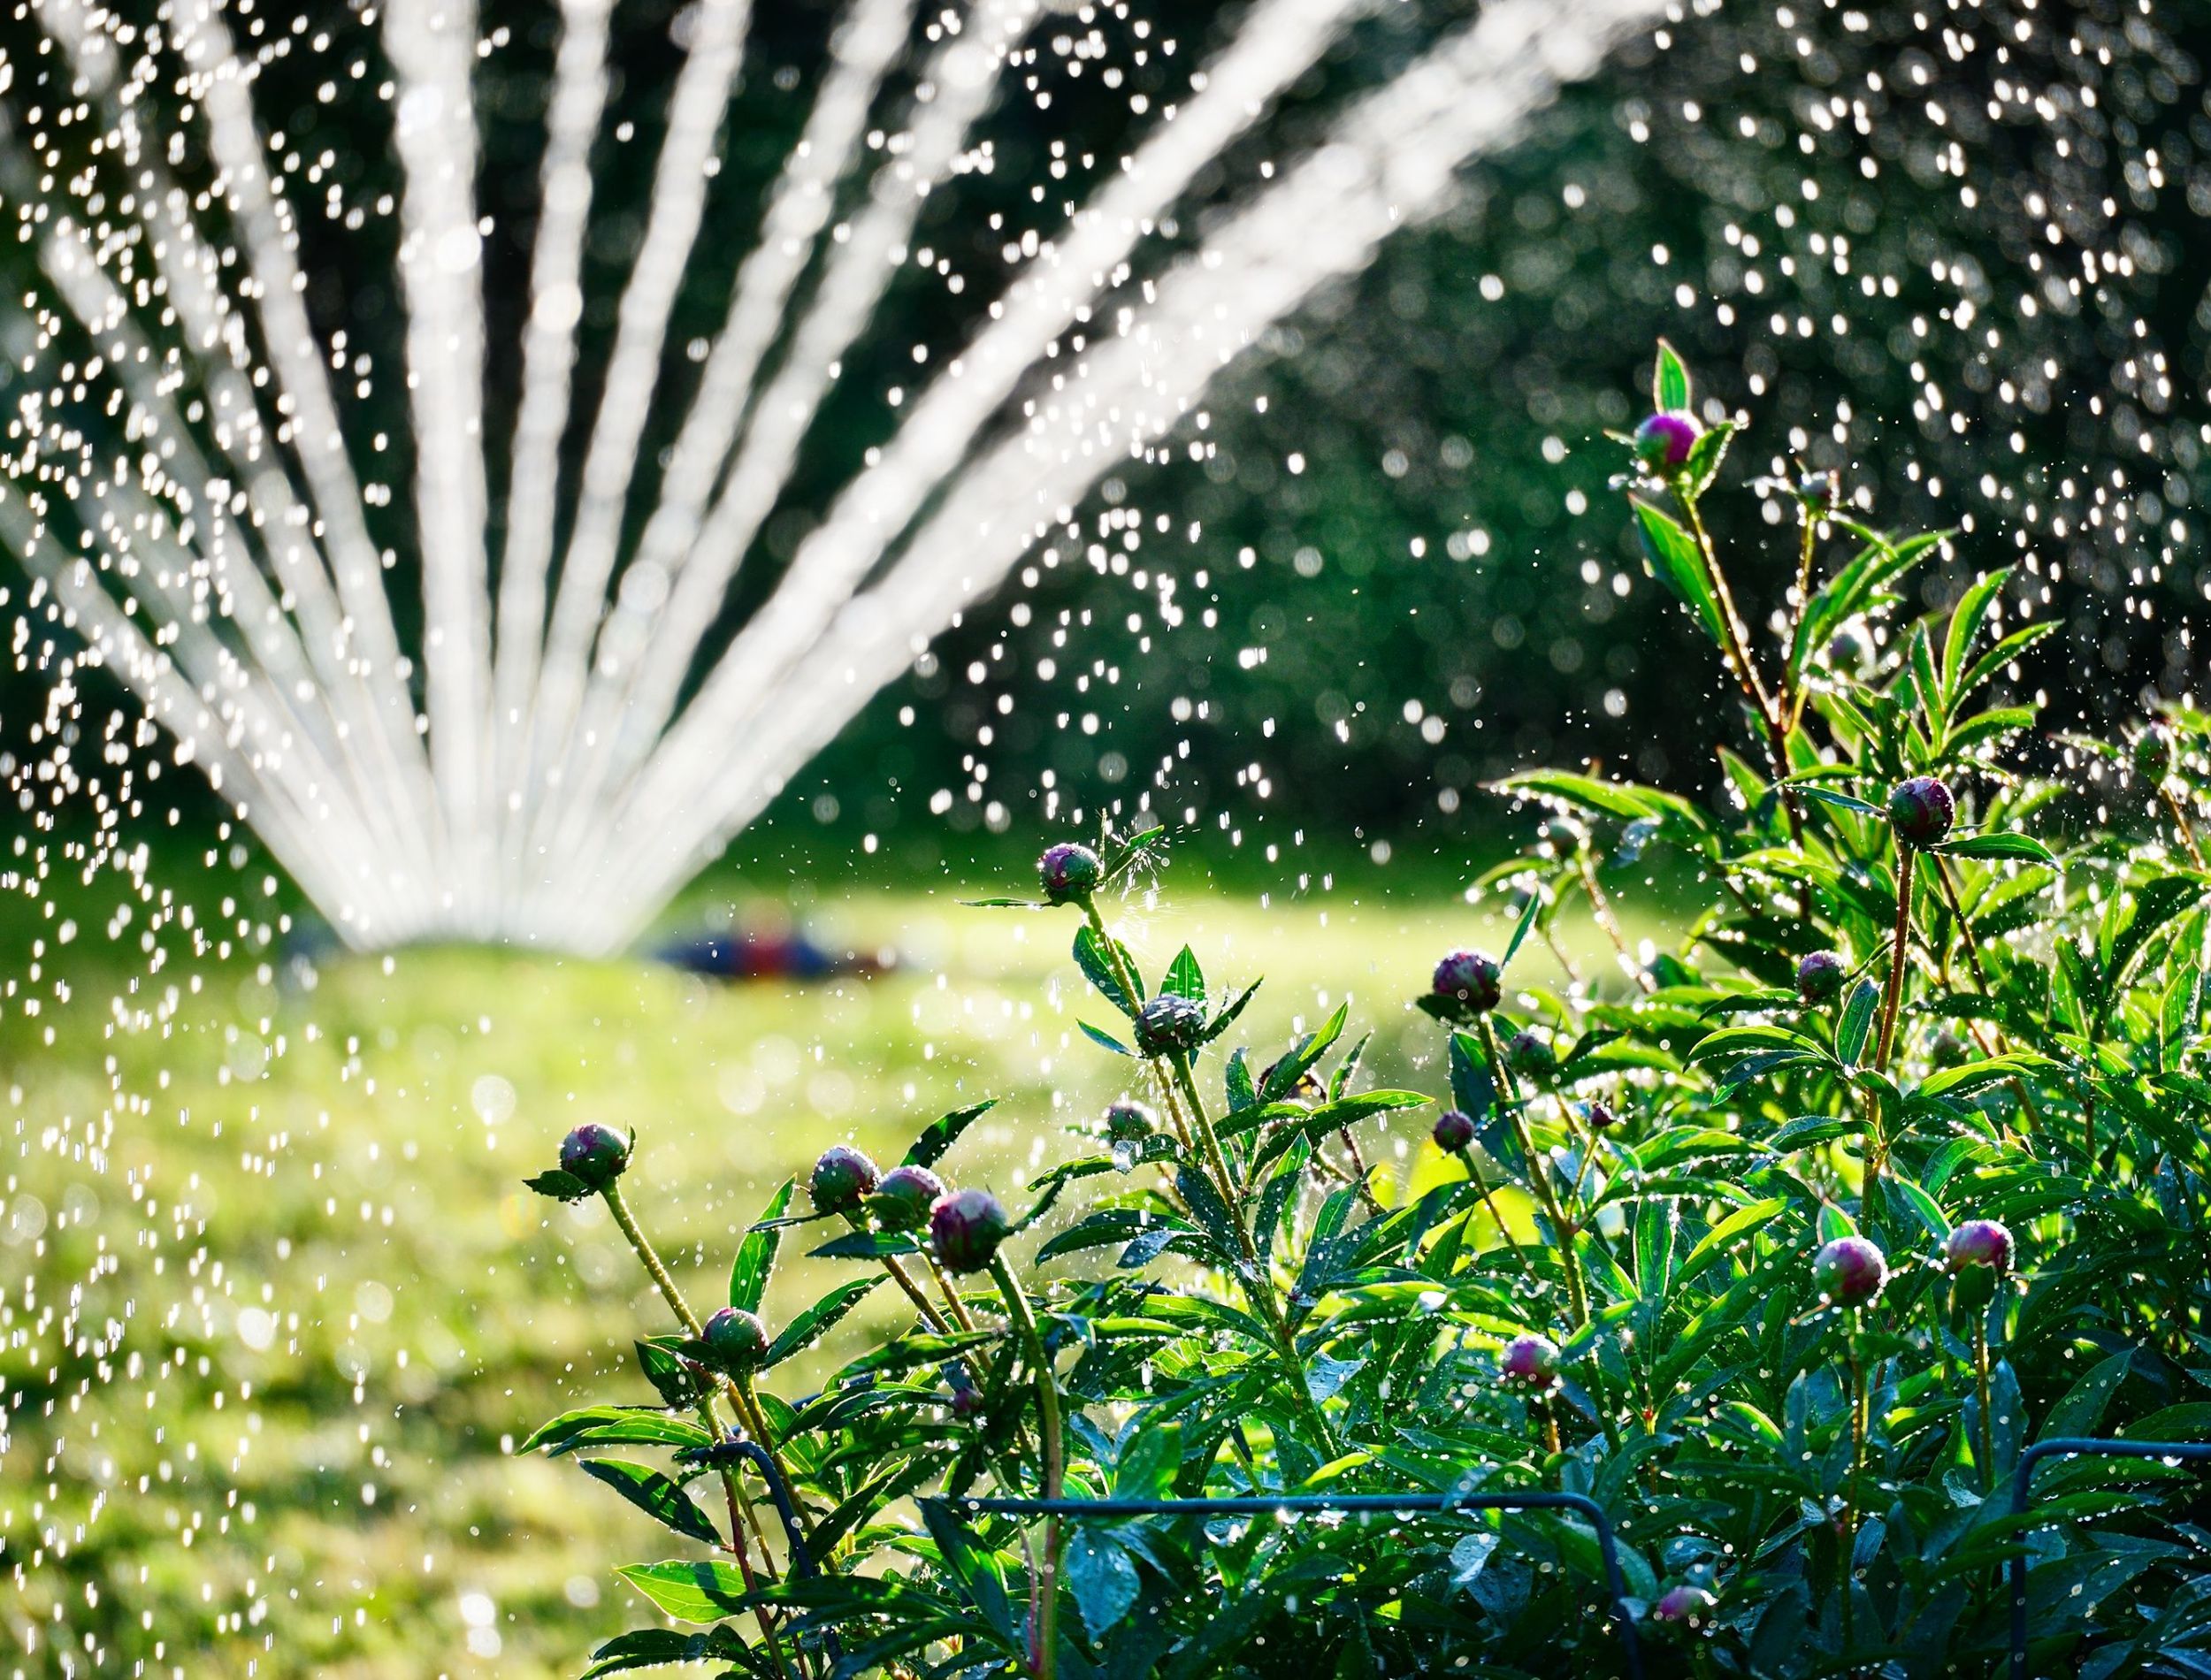 Sprinkler Rotating Lawn Sprinklers Large Area Coverage Water Sprinkler for  Garden Yard Lawns Oscillating Hose 360 Degree Rotation Irrigation System